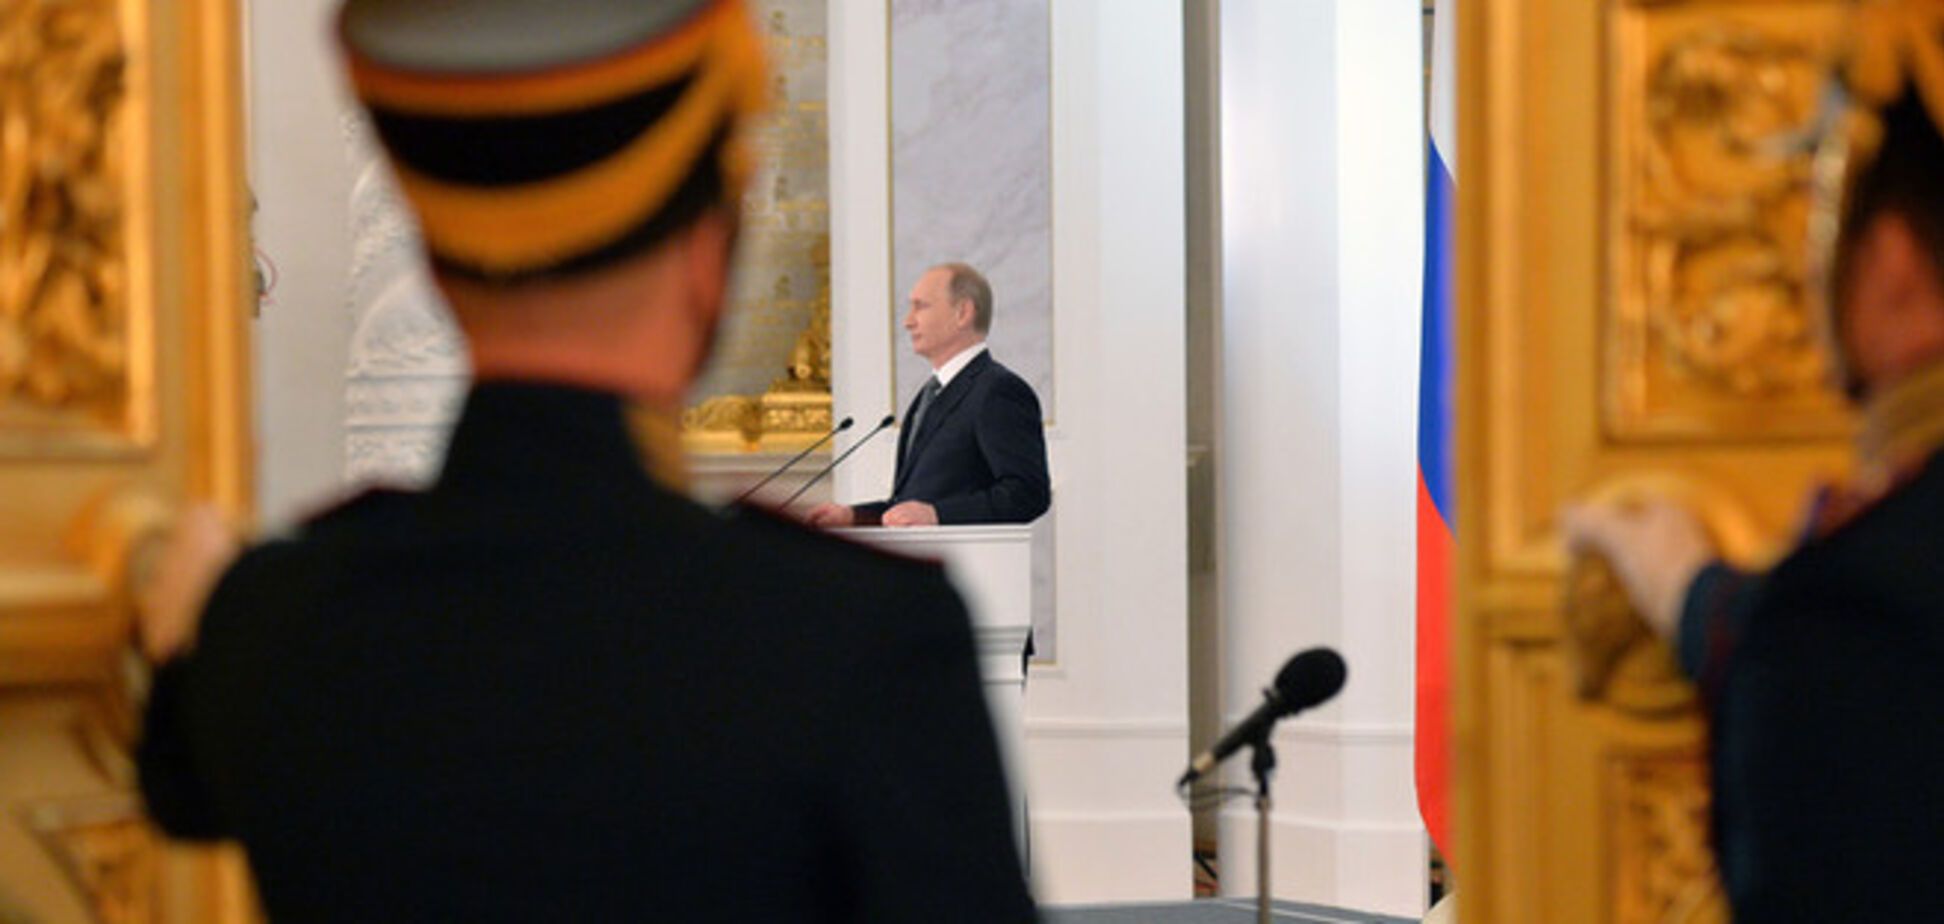 Обращение Путина: болен, знает об этом, что делать не придумал